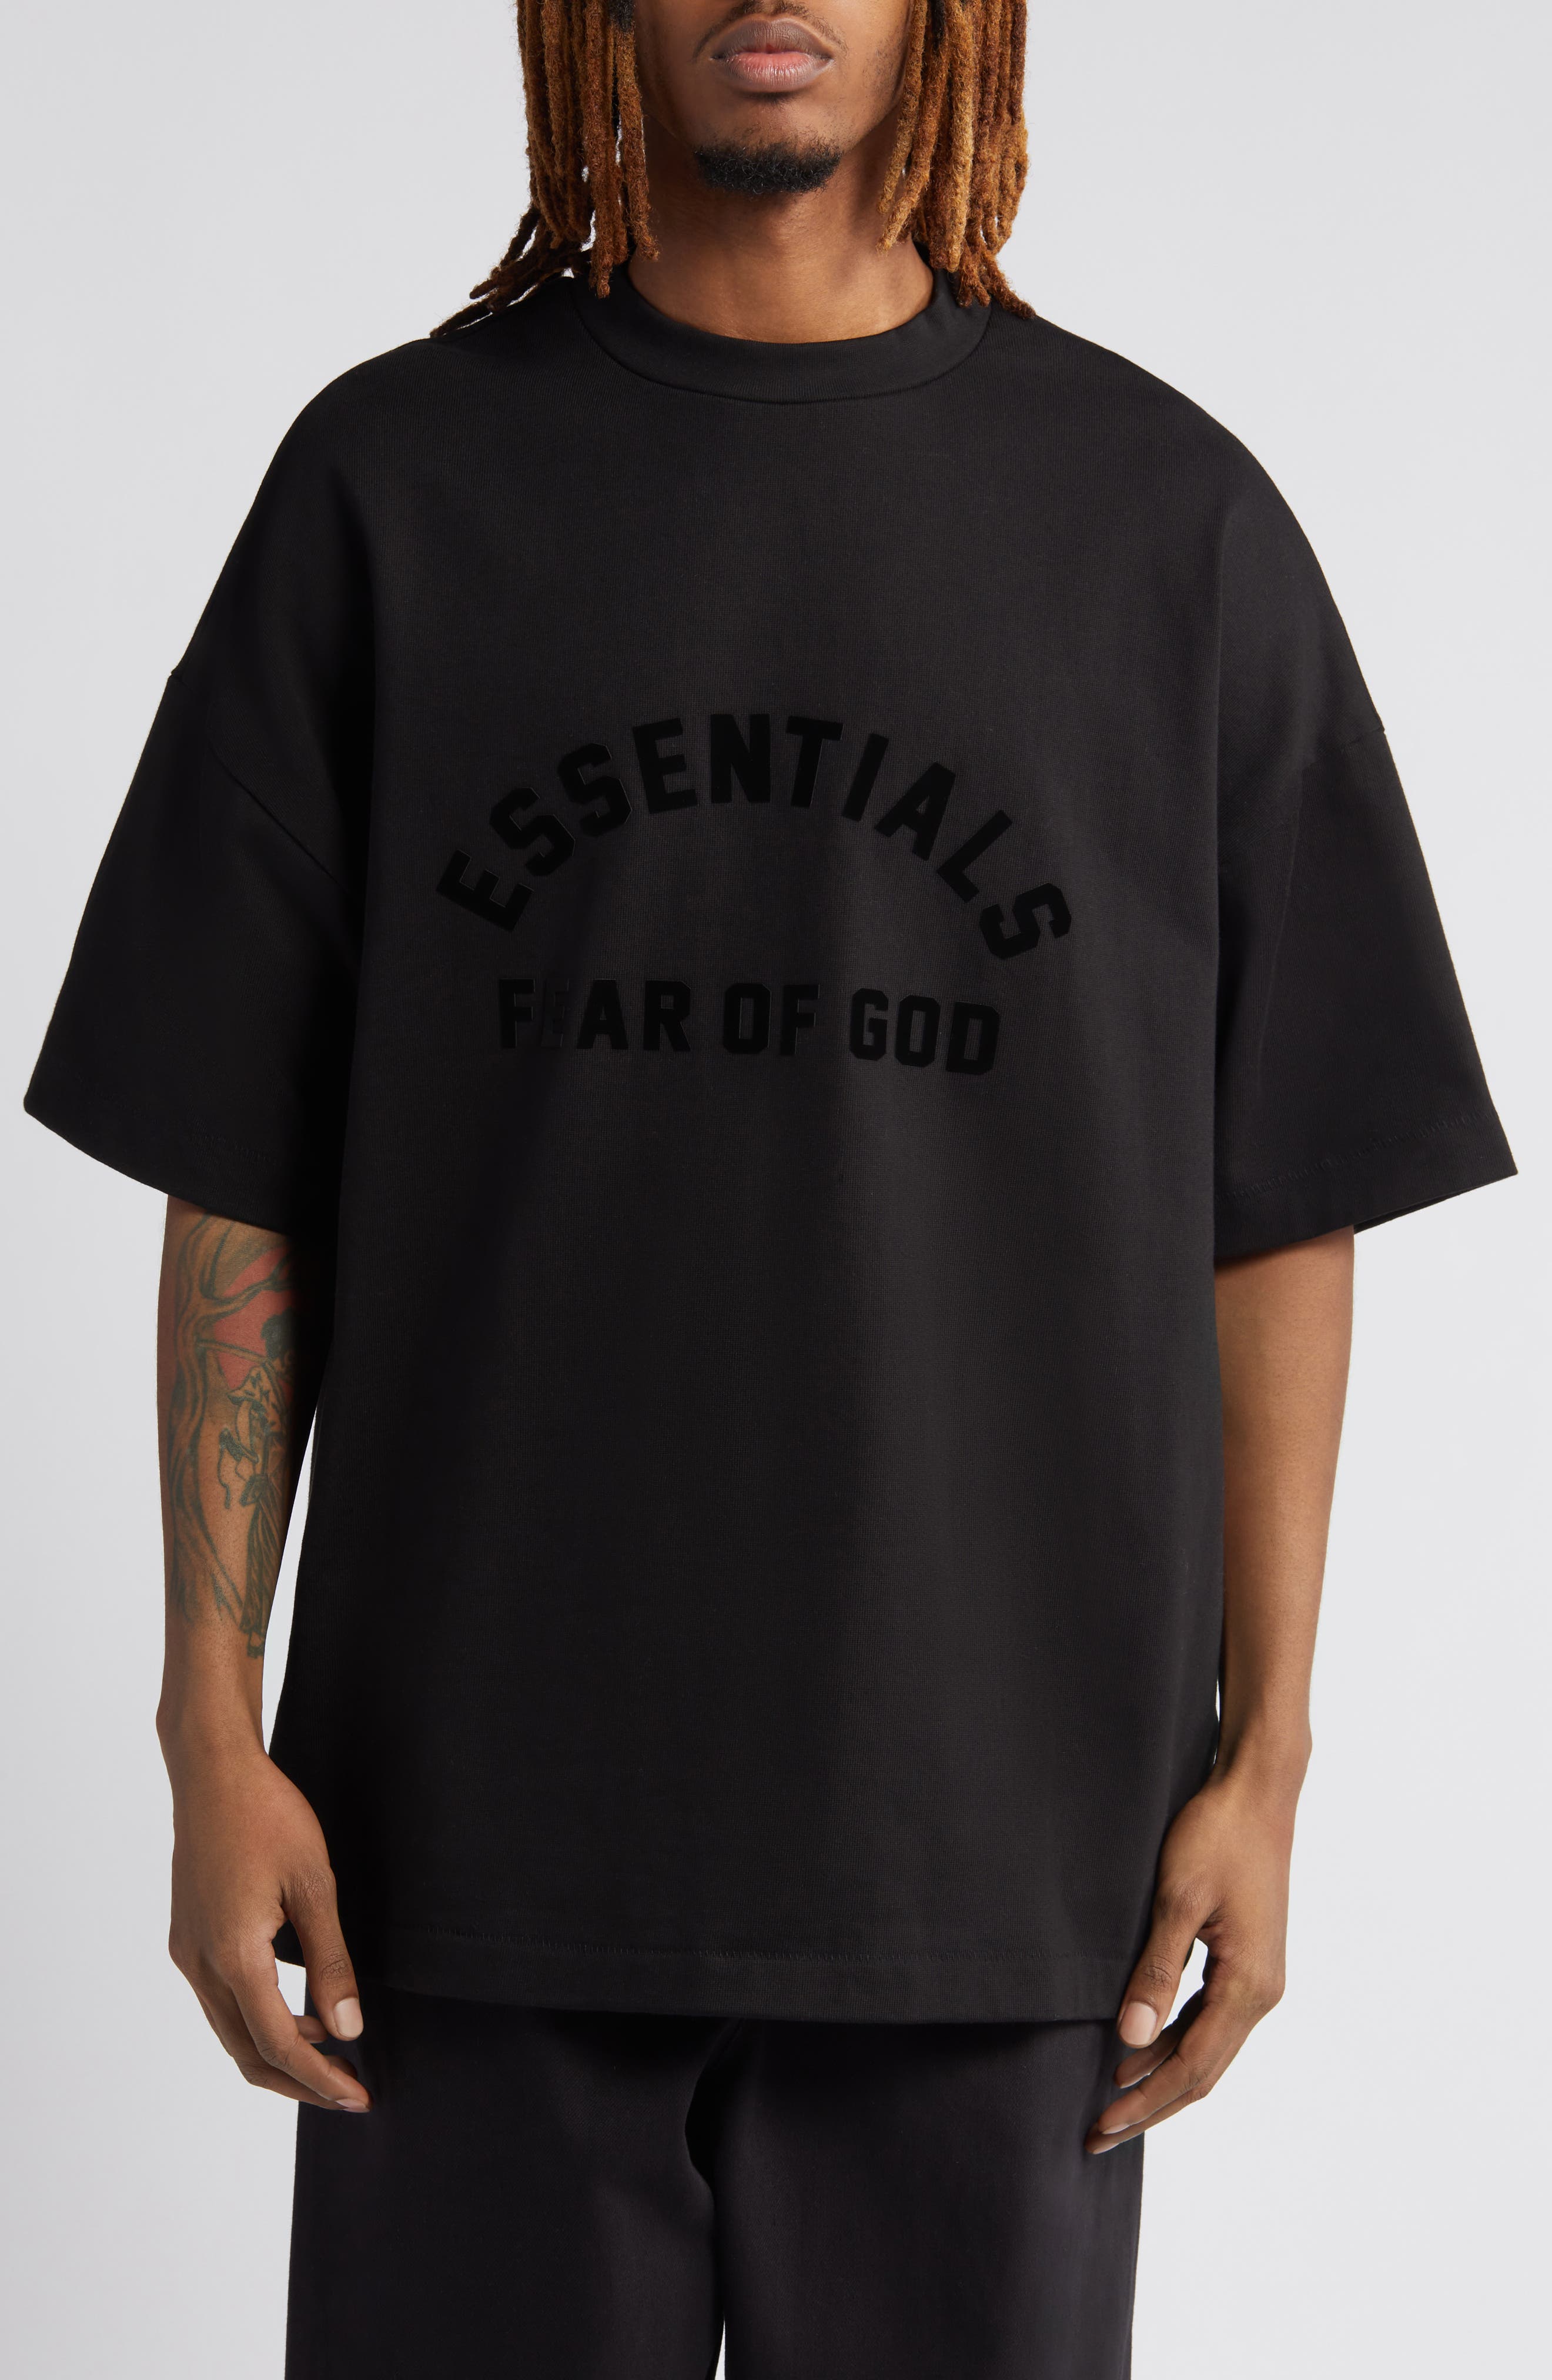 Mens Fear of God Essentials T-Shirts | Nordstrom